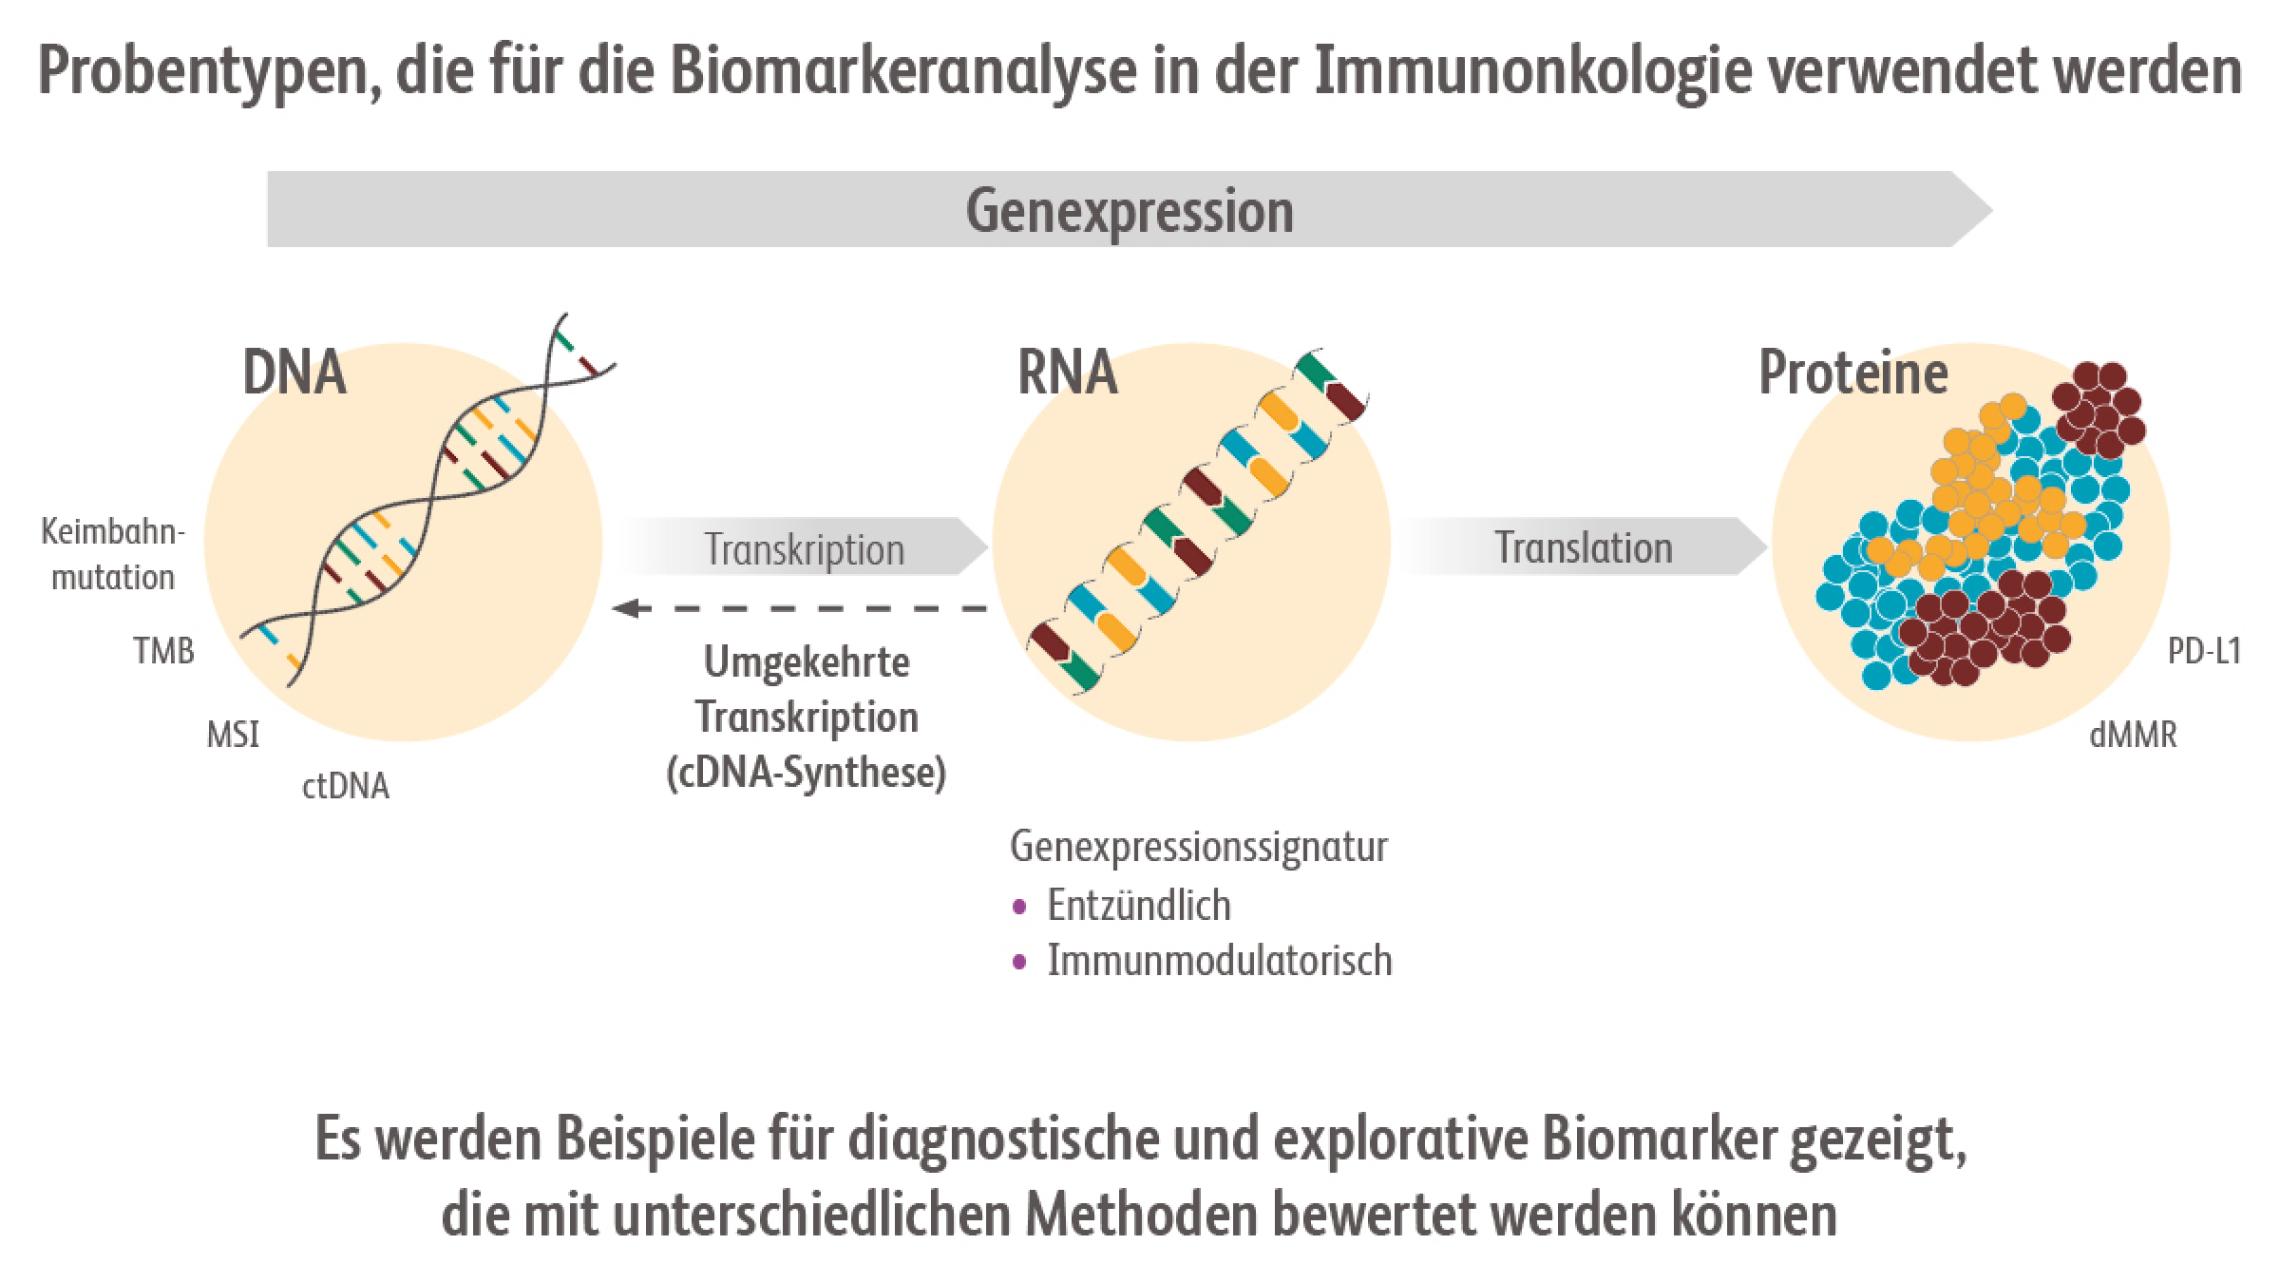 Biomarker, die in der Immunonkologie verwendet werden, können Moleküle sein, die in Blut oder Geweben nachgewiesen und gemessen werden können, wie z. B. DNA, RNA oder Proteine.